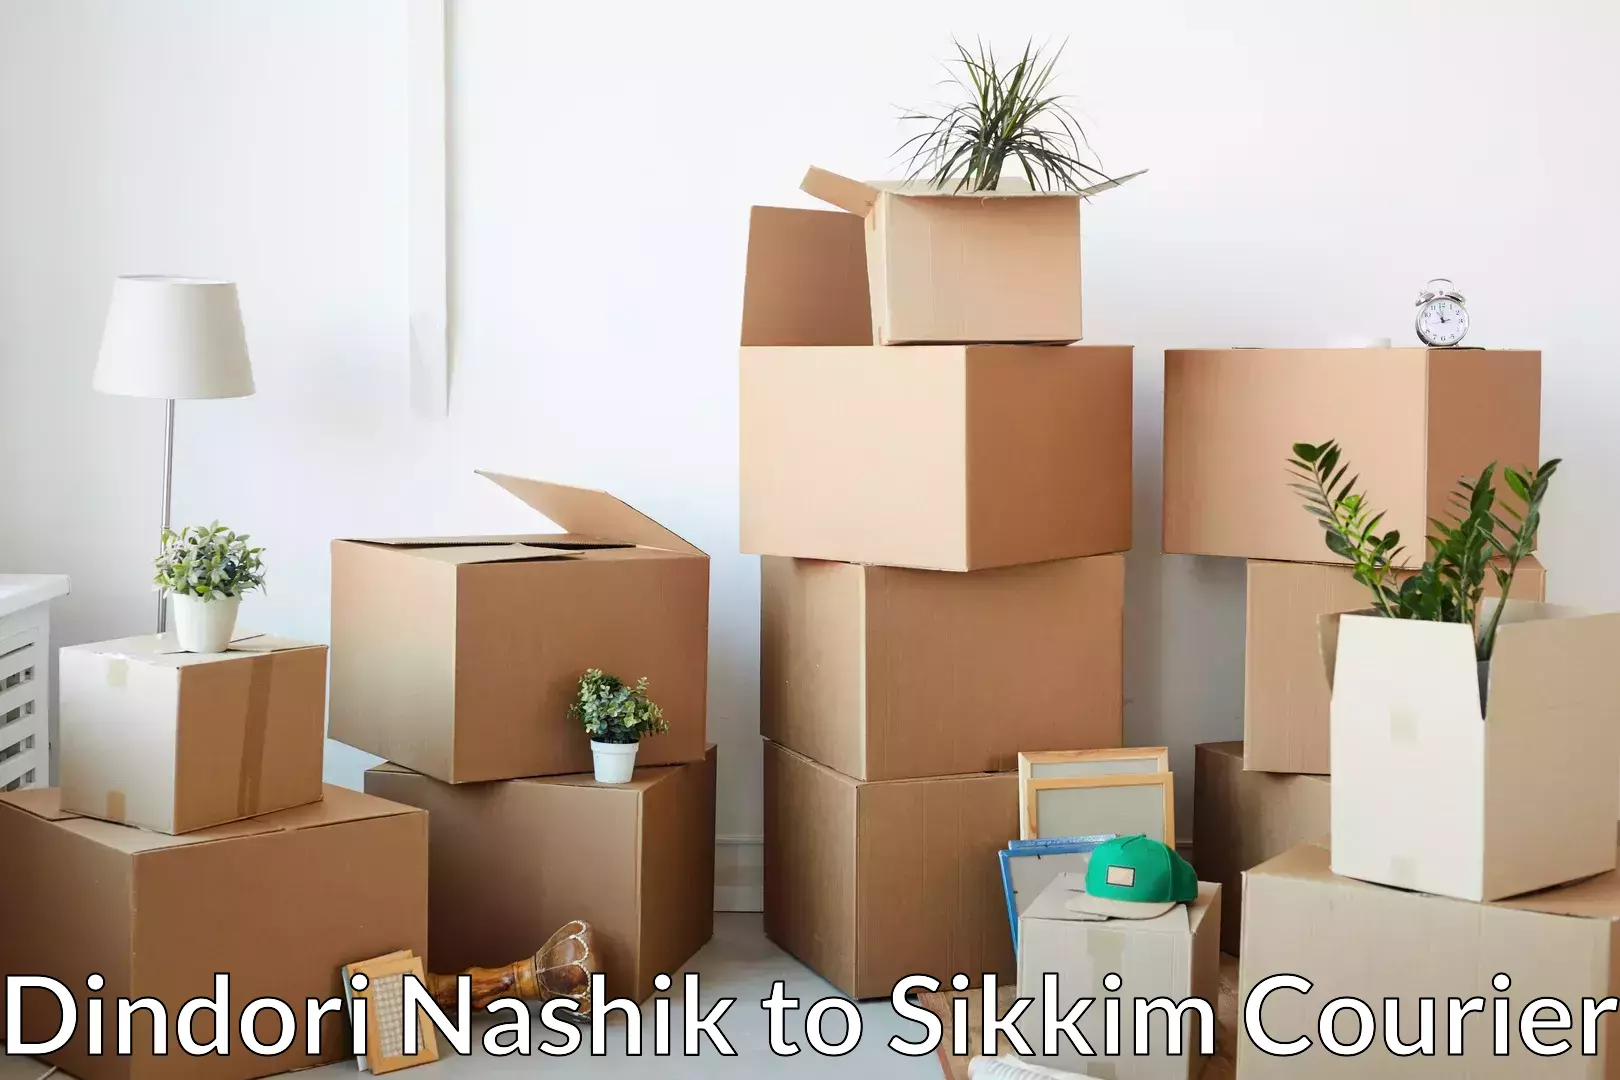 Furniture moving experts in Dindori Nashik to Ranipool